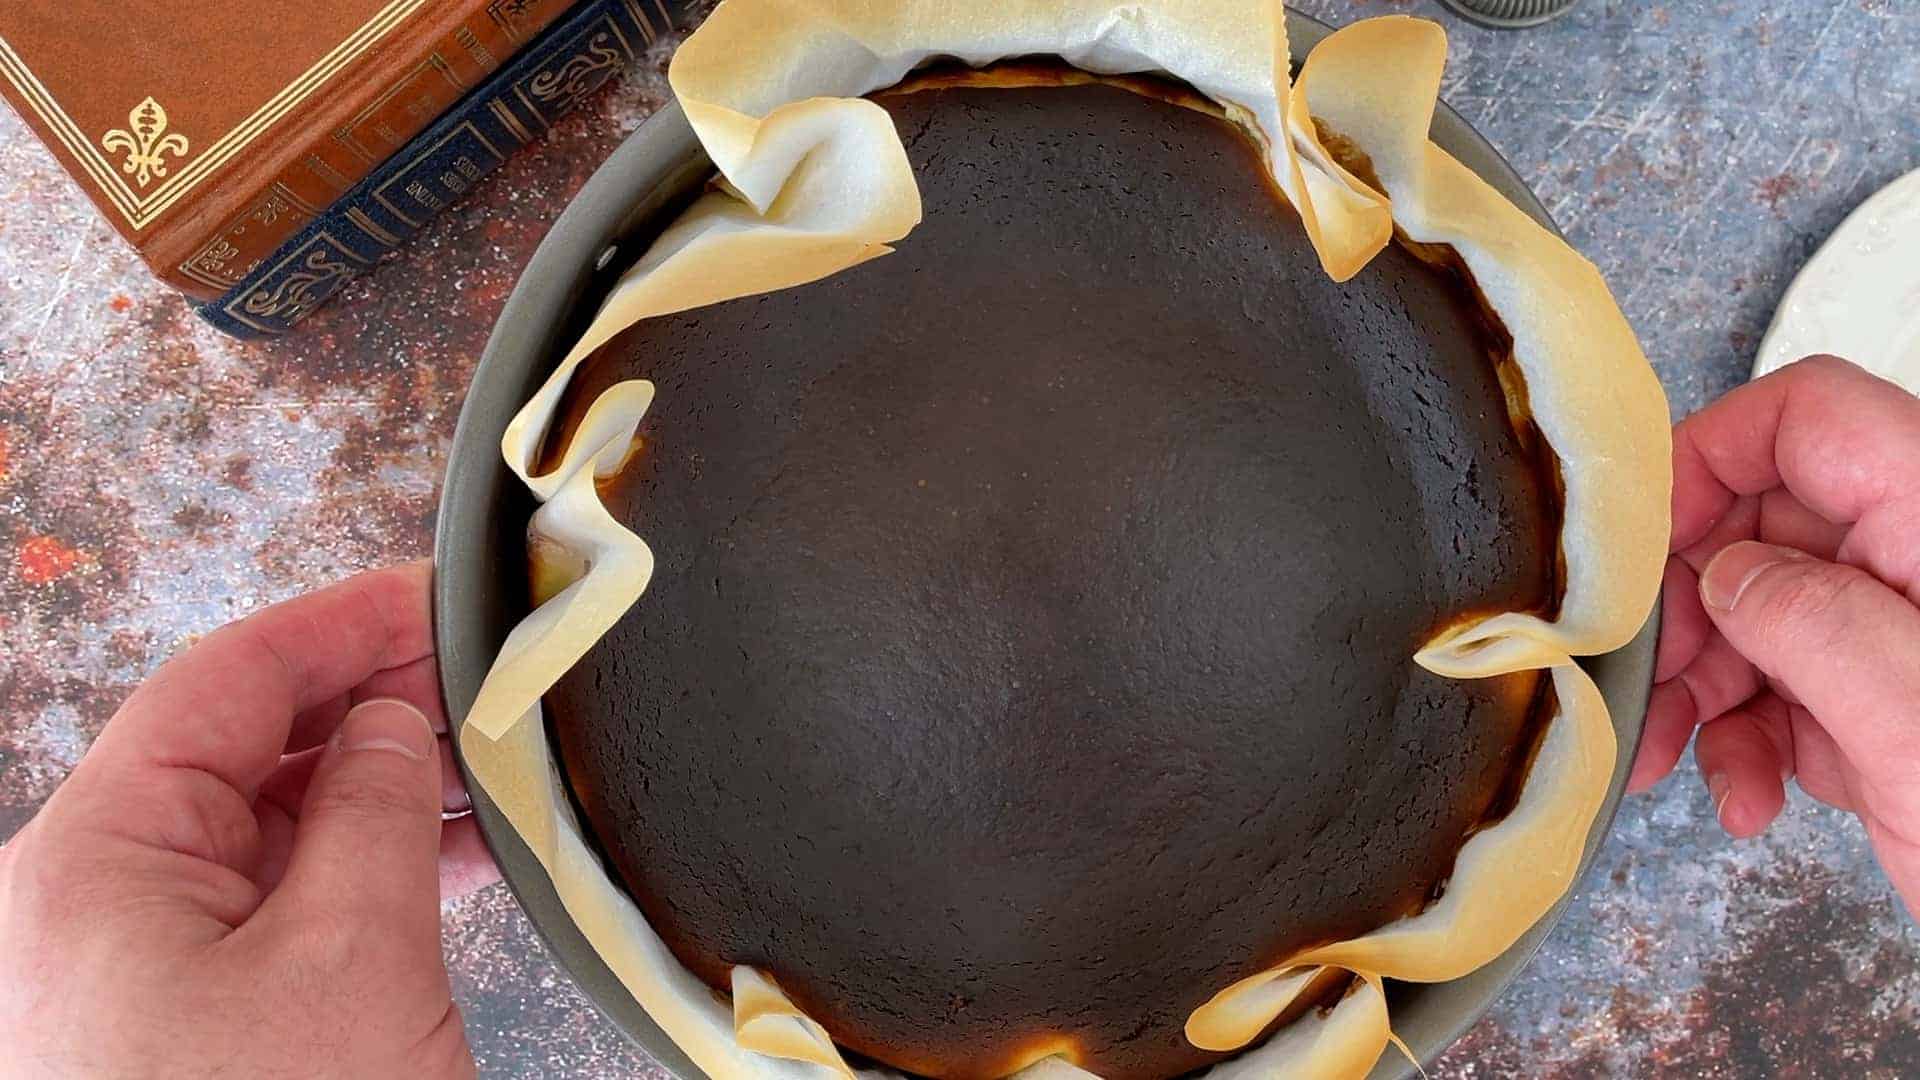 Burnt Cheesecake